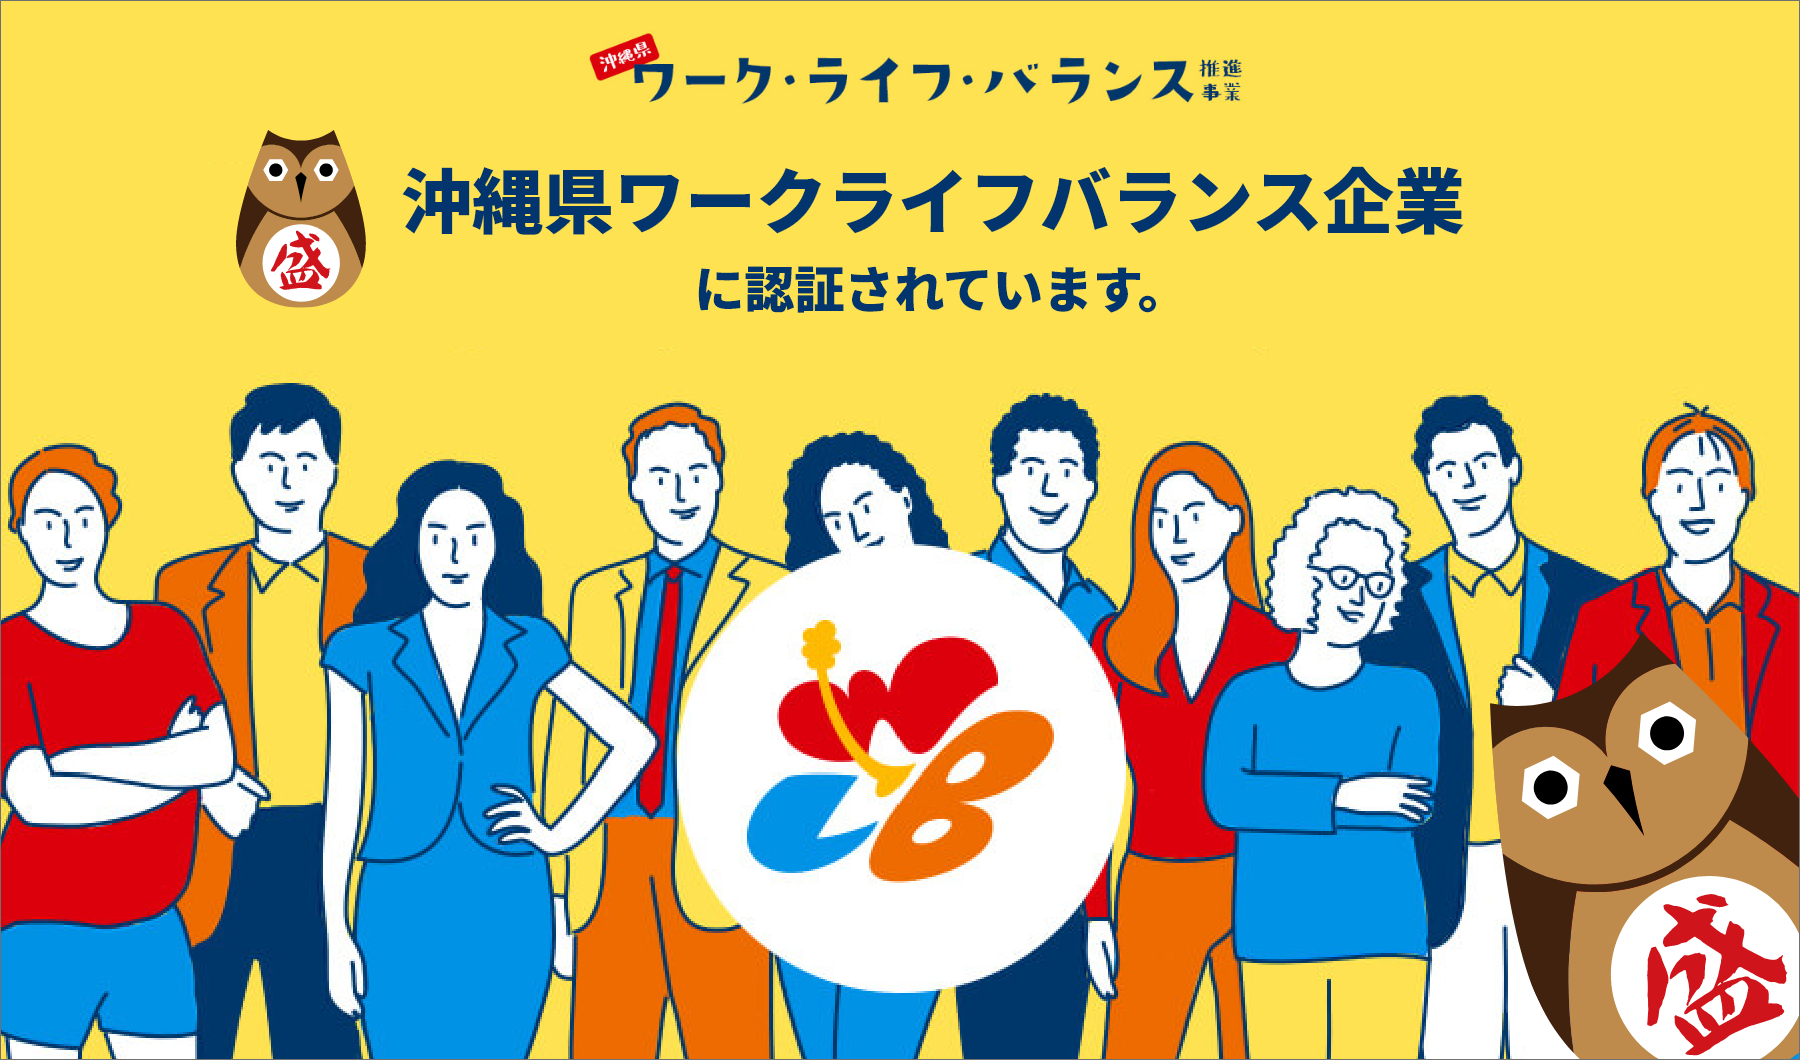 沖縄県ワークライフバランス企業に認証されています。